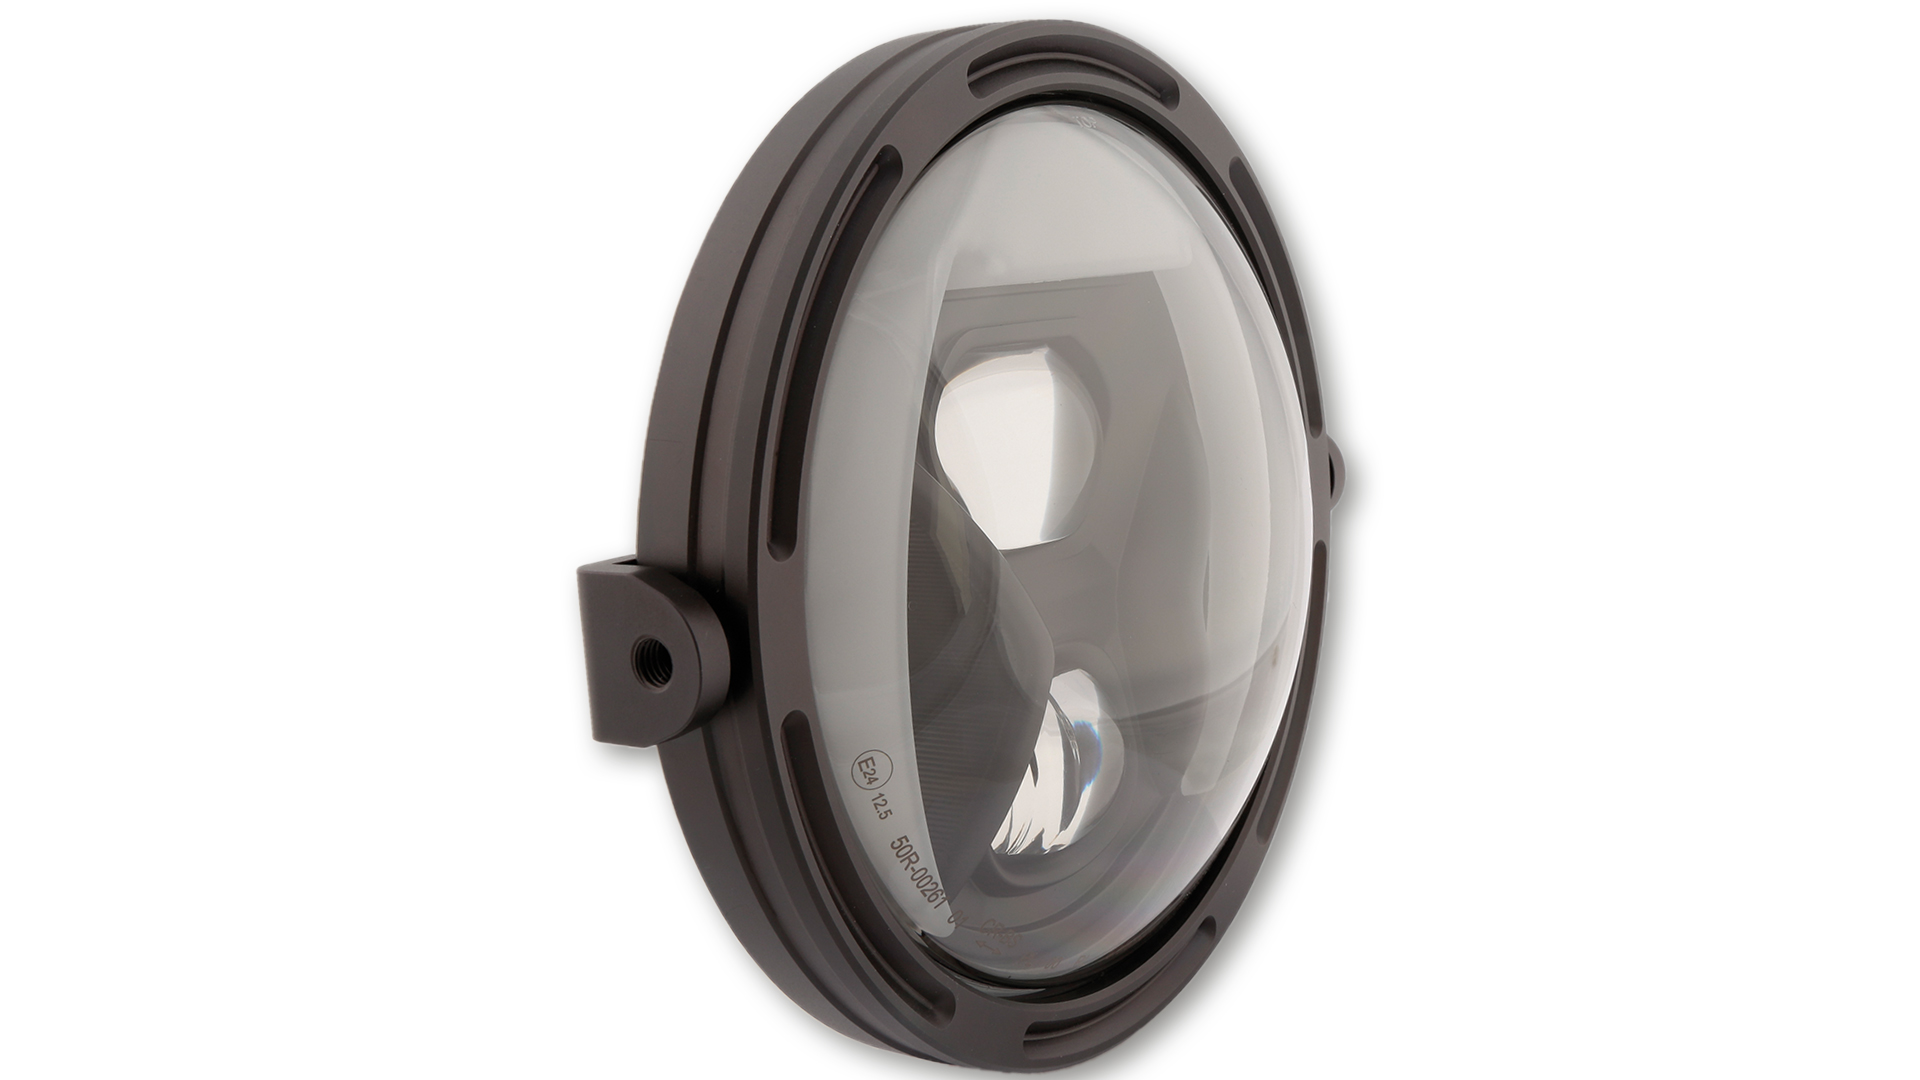 7 Zoll LED Hauptscheinwerfer mit Tagfahr-, Positions- und Kurvenlicht, rund, Reflektor Schwarz, mit getöntem Glas, E-geprüft. Erhältlich mit seitlicher oder unterer Befestigung.